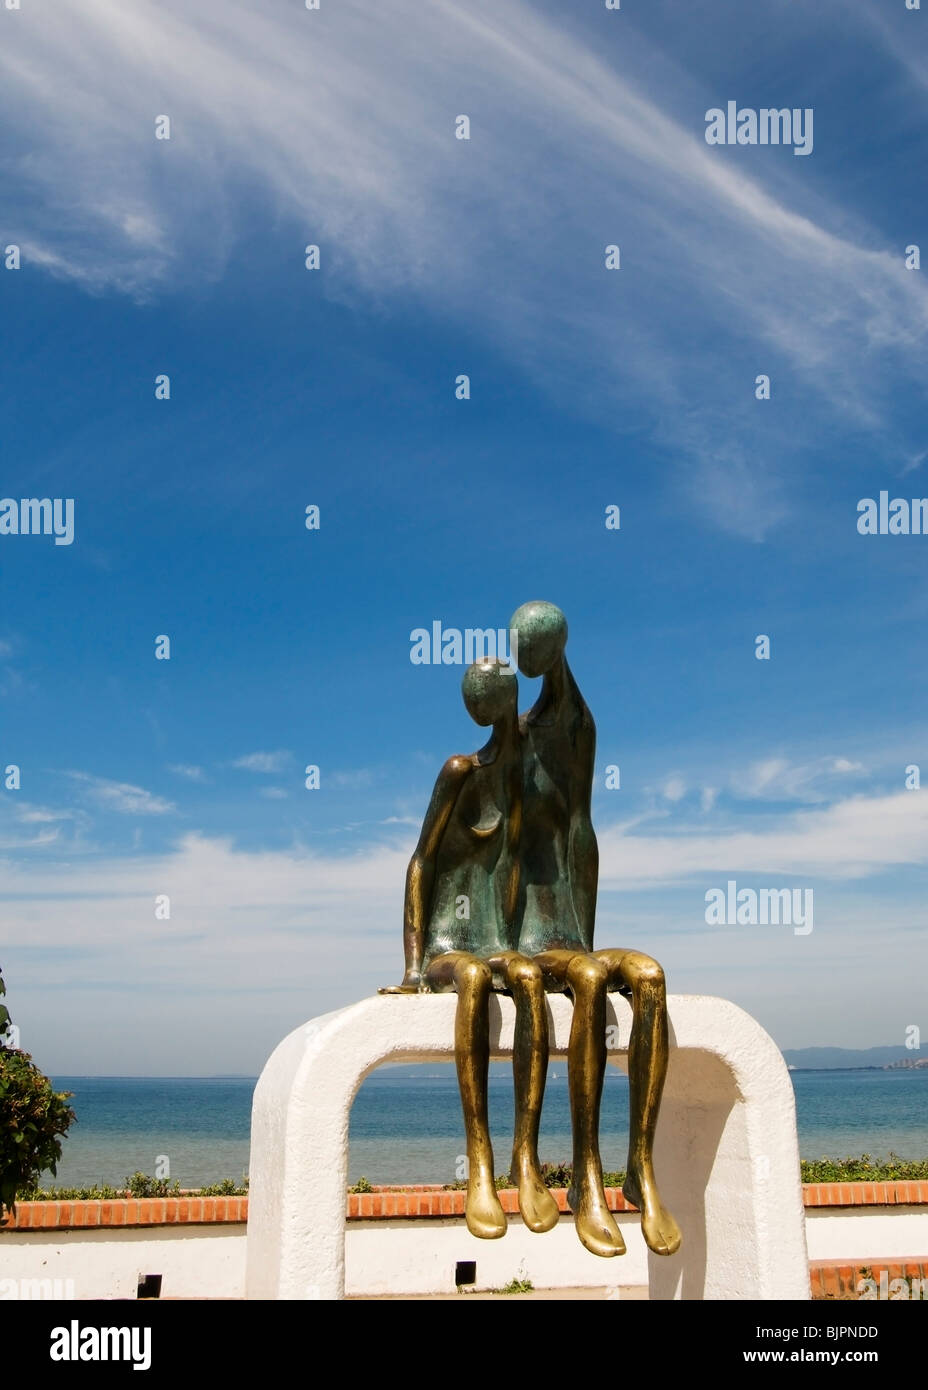 Monumentale Bronzeskulptur La Nostalgie von Ramiz Barquet befindet sich auf dem Malecon in Puerto Vallarta Mexiko. Stockfoto